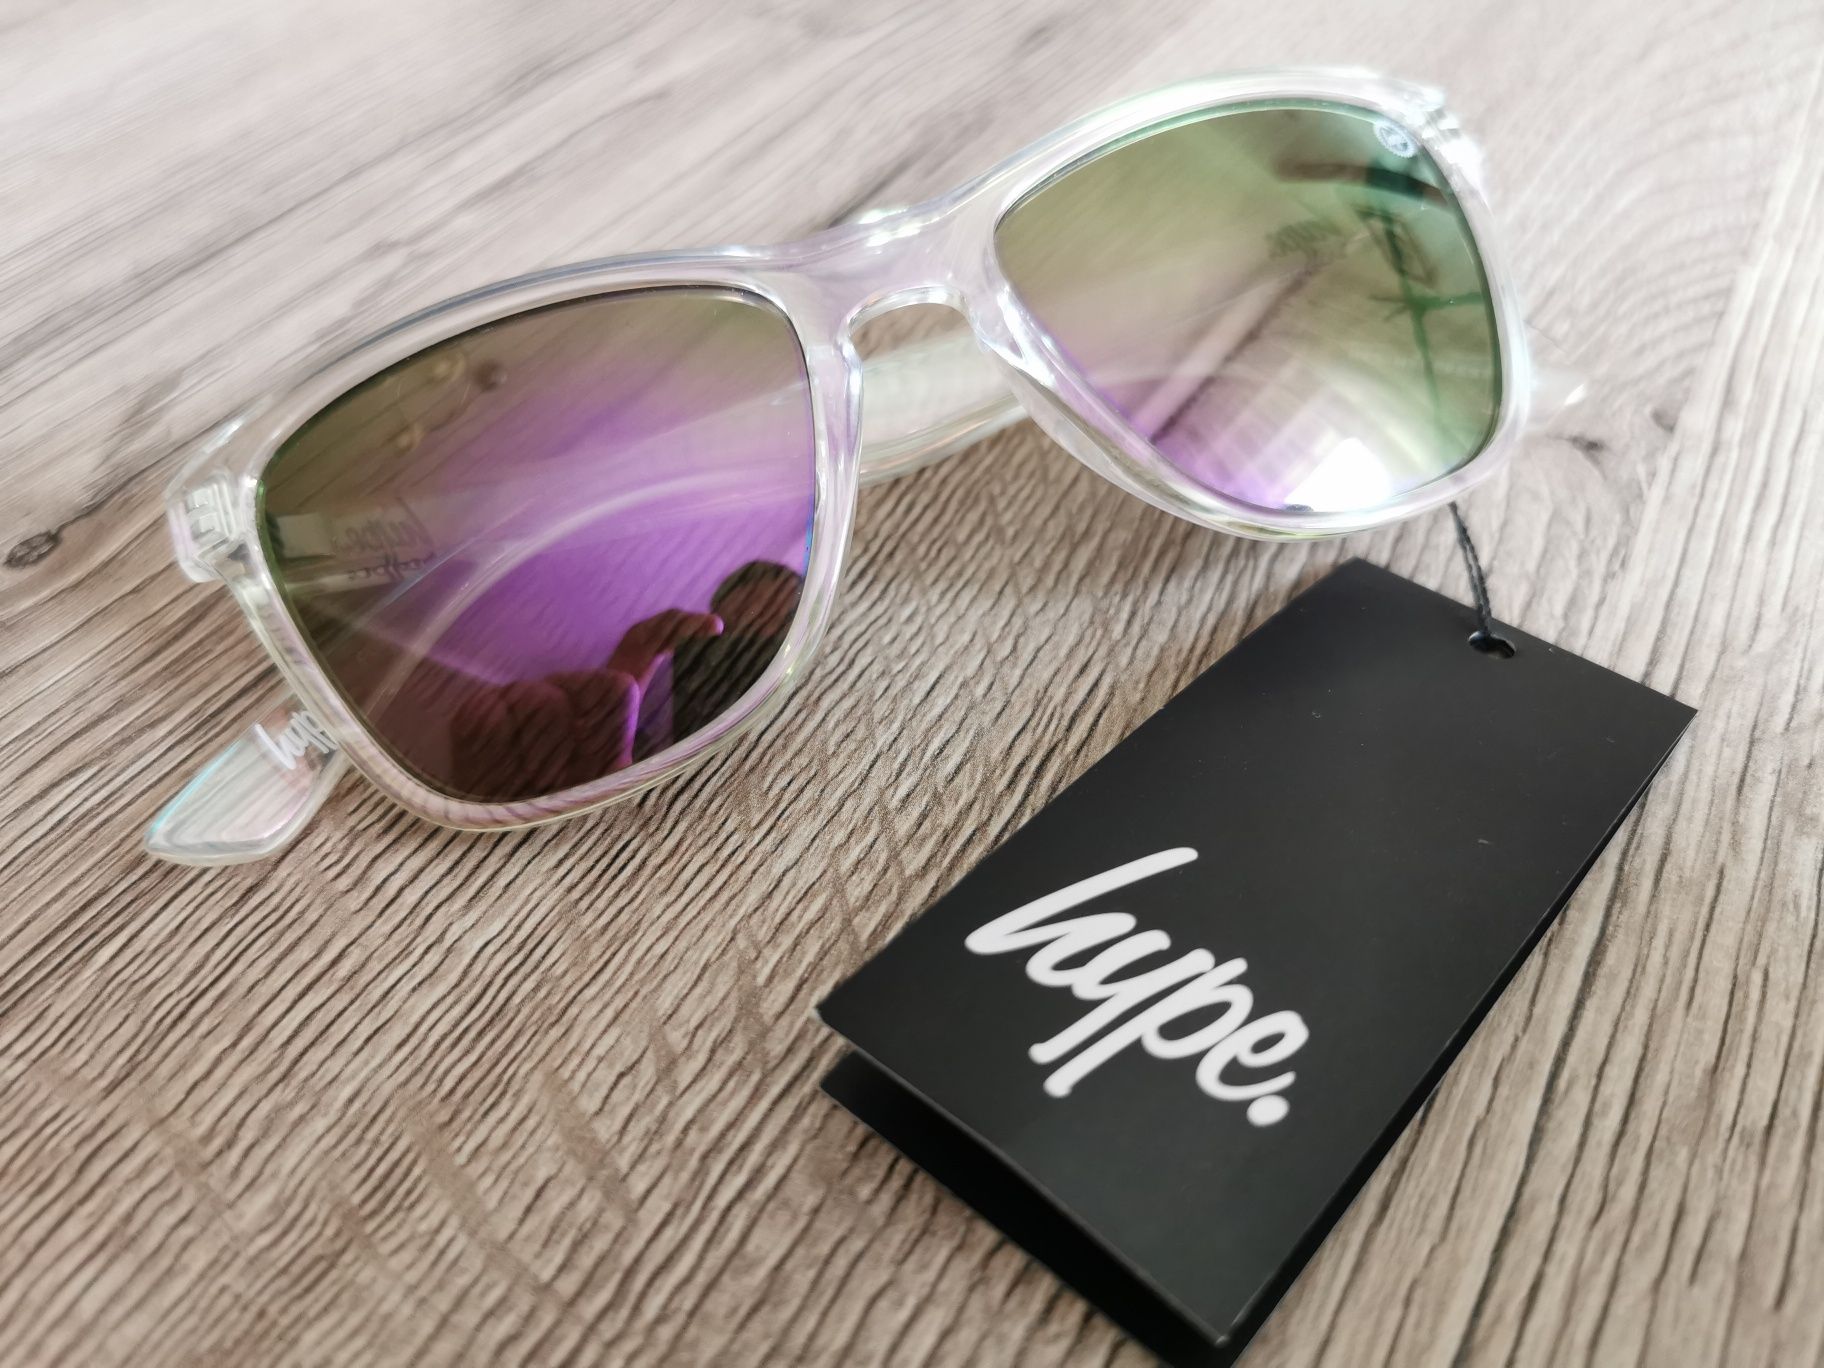 Nowe oryginalne okulary przeciwsłoneczne HYPE hyperfest c:113 unisex